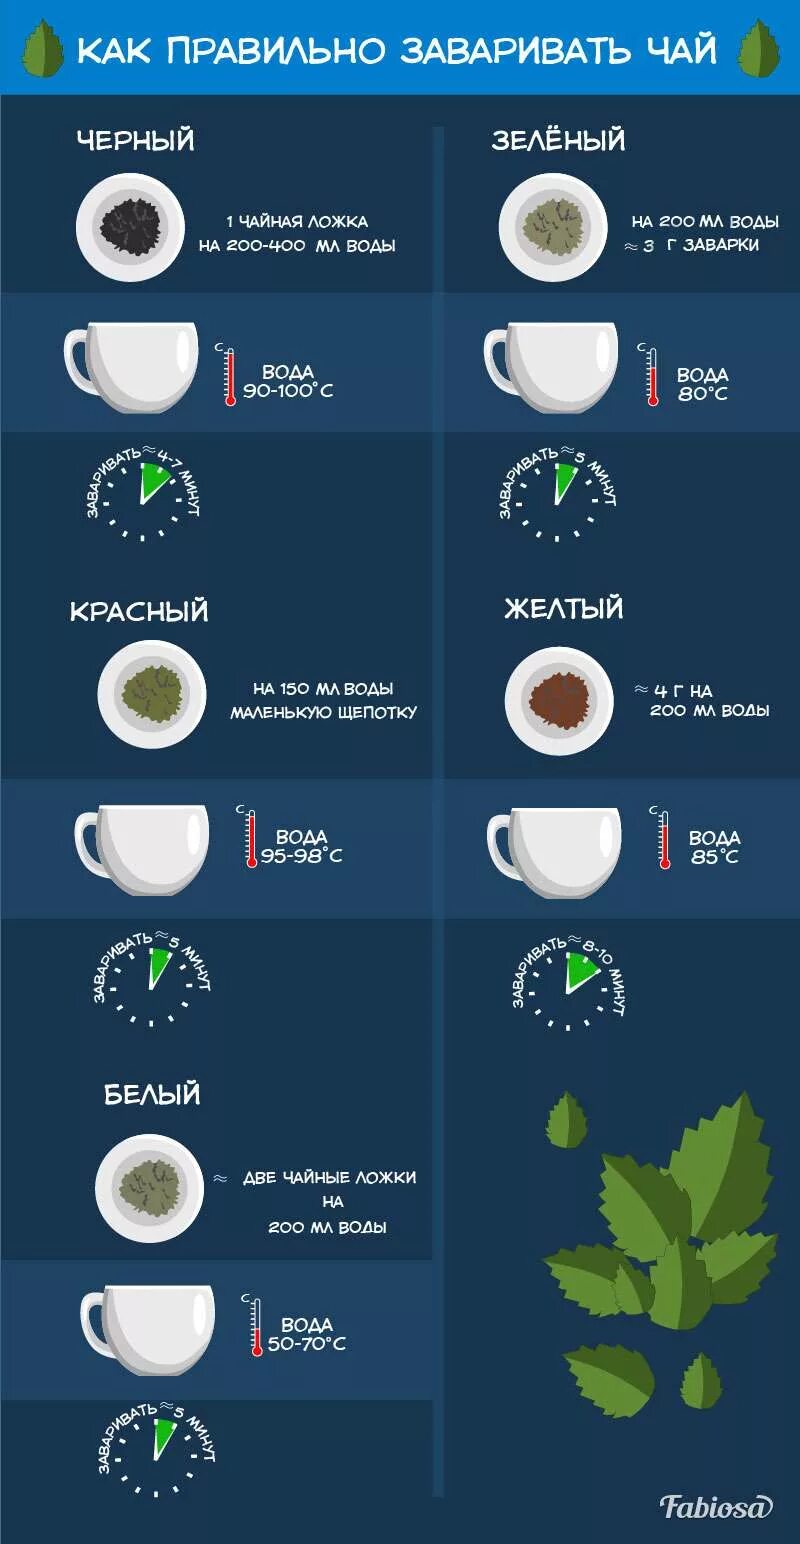 Сколько раз заваривать зеленый чай. Как правильно заваривать чай. Как завариватььзеленый чай. Как правильно заваривать зеленый чай. Правильная заварка чая.